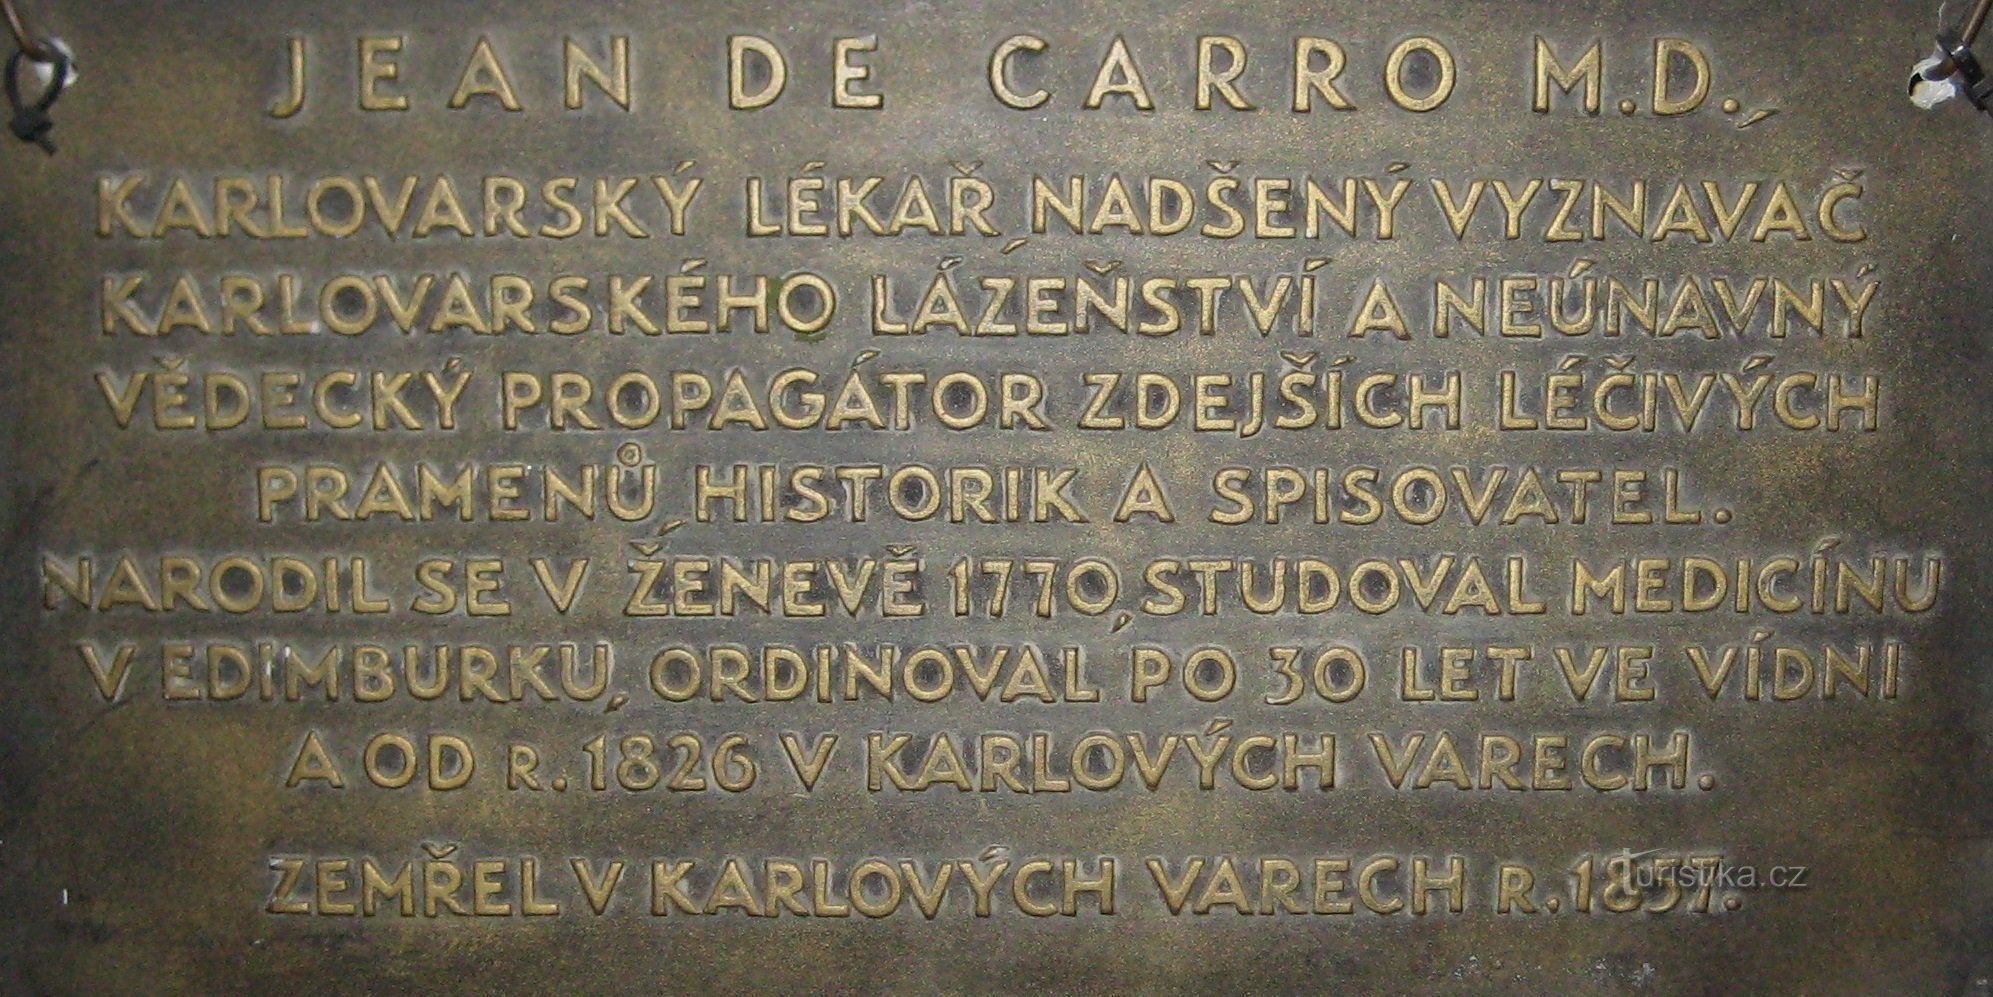 Busto de Jean de Carro - Baños Imperiales - Karlovy Vary